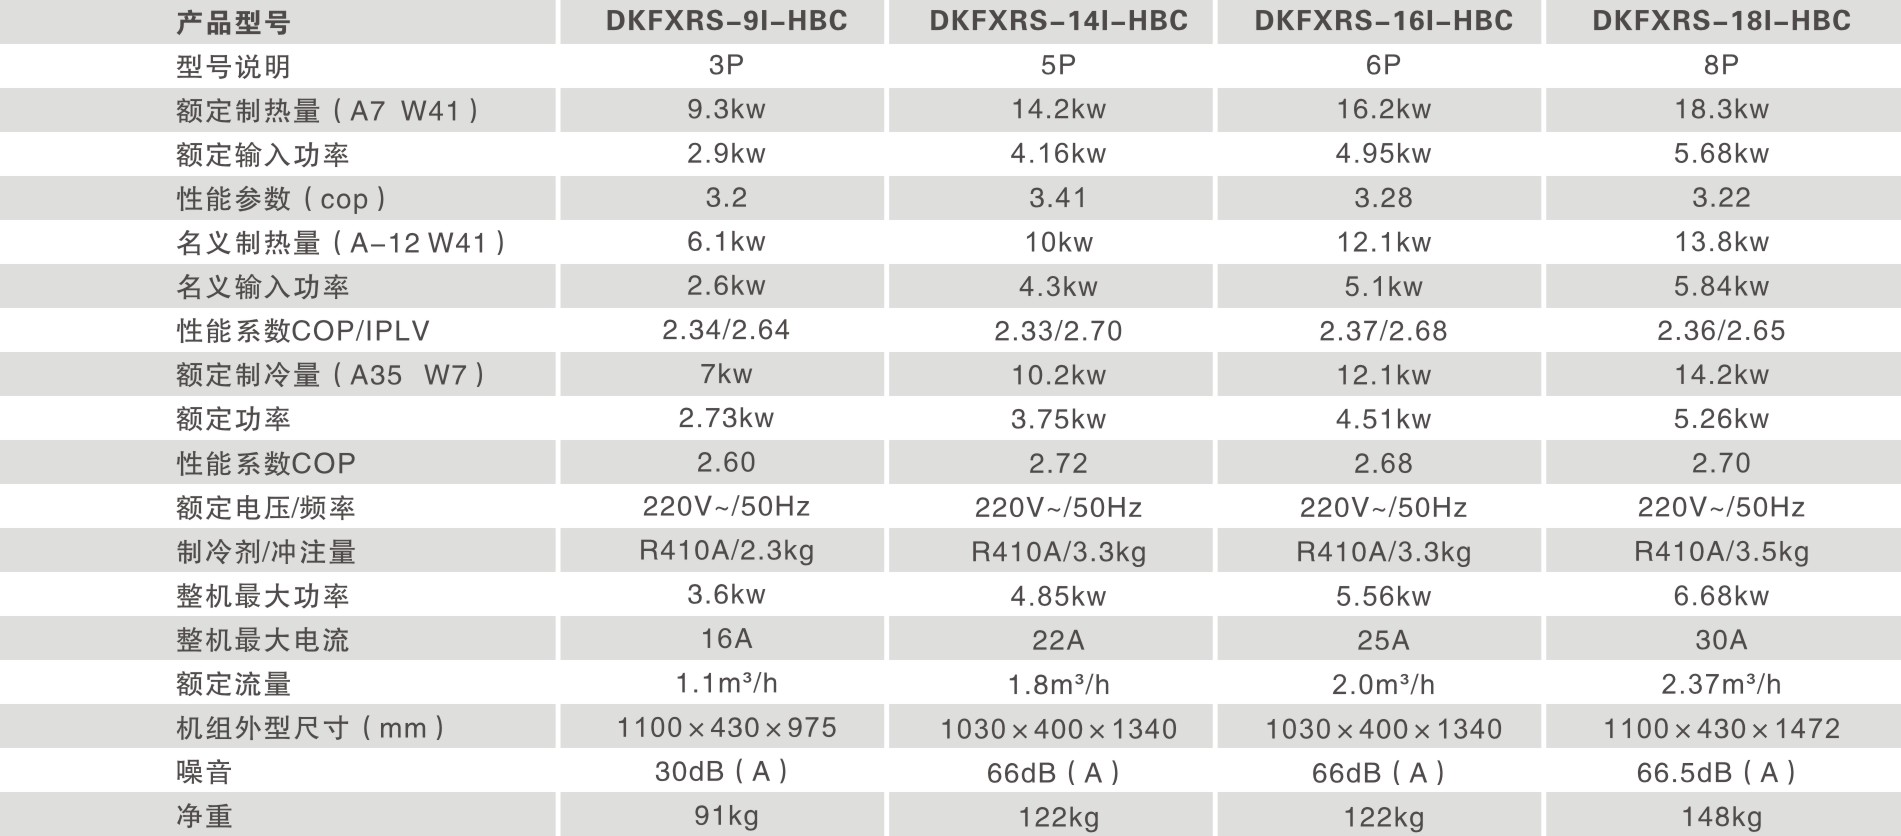 一體變頻機DKFXRS-16I-HBC